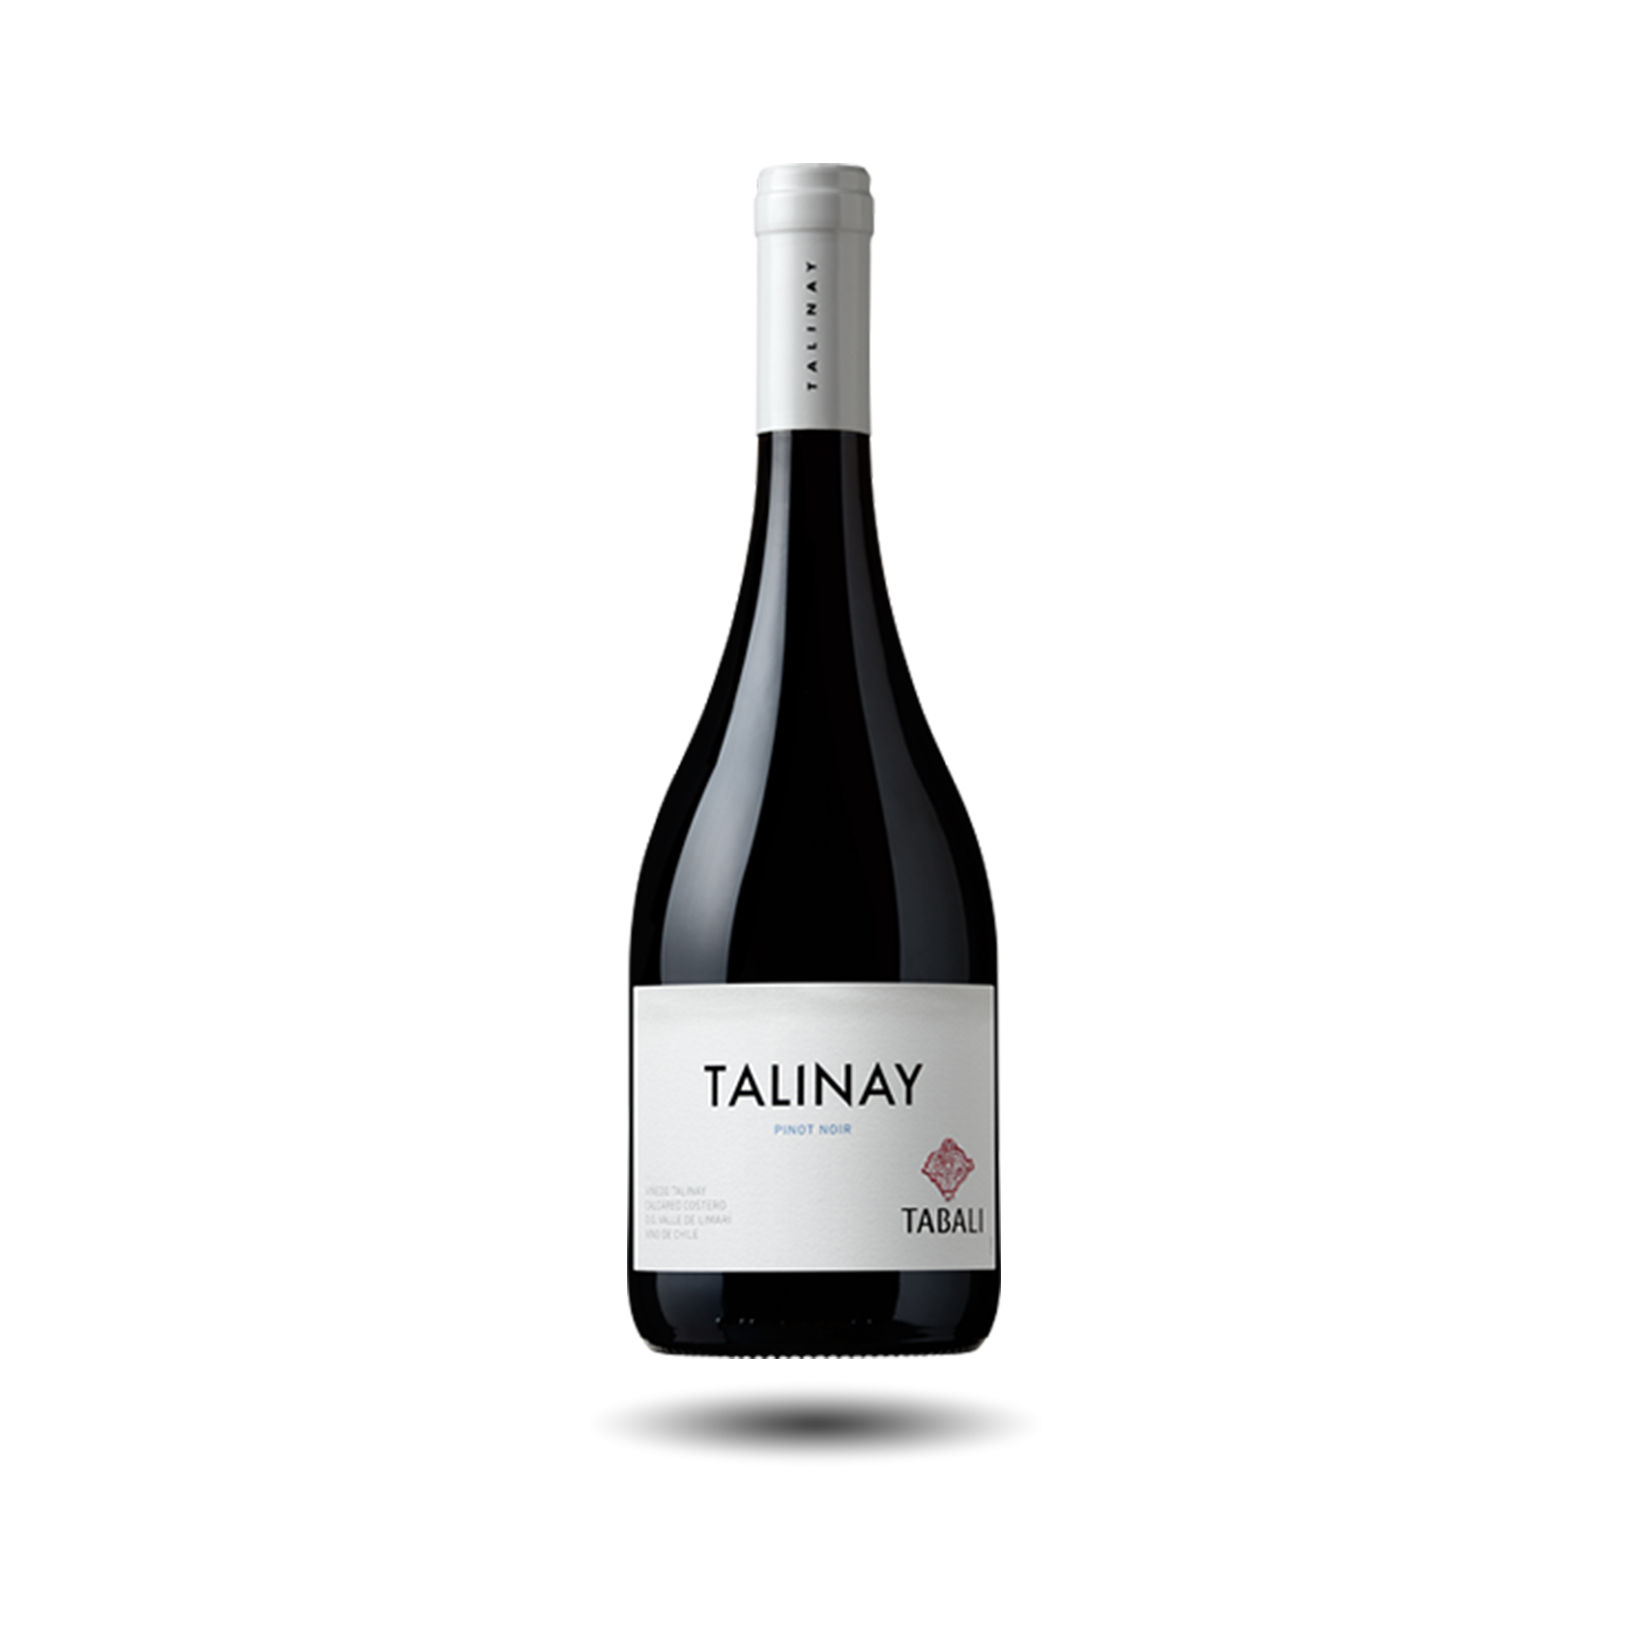 Tabali - Talinay, Pinot Noir, 2018